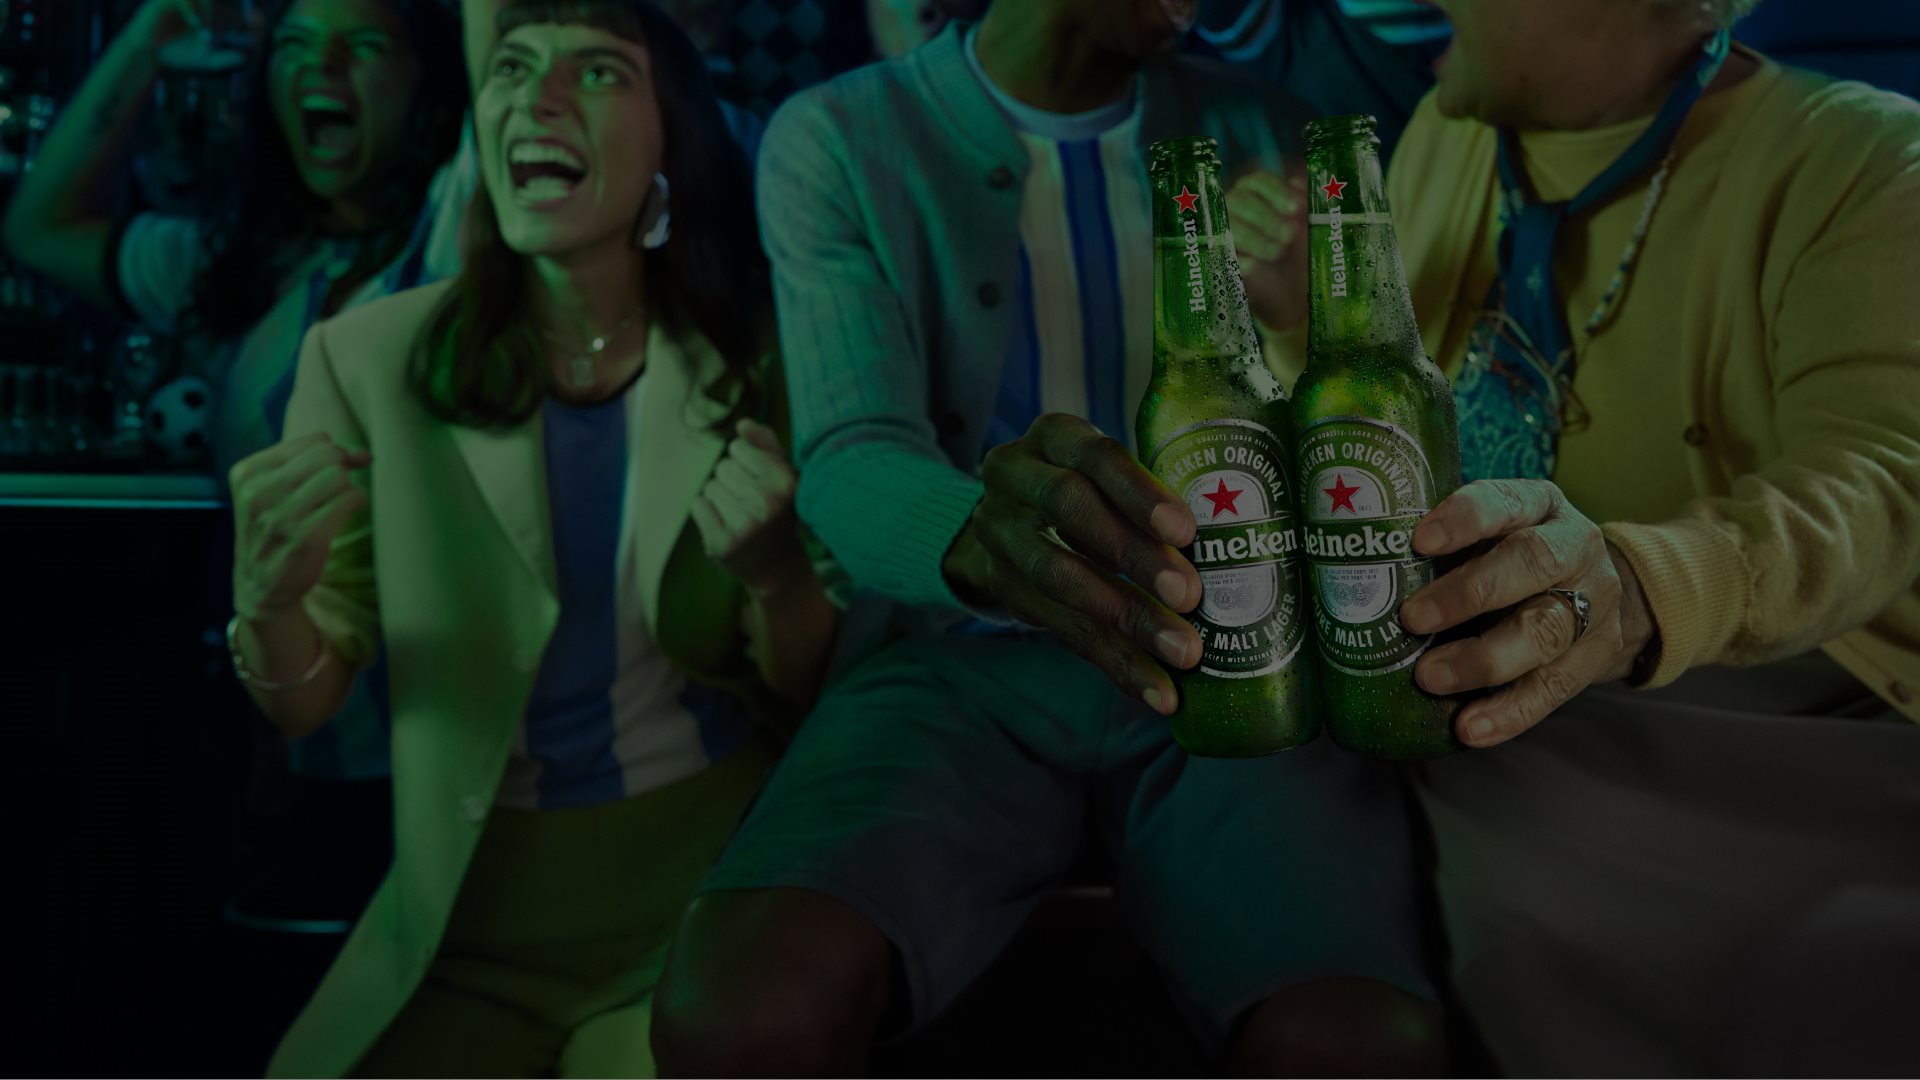 Heineken Image 2